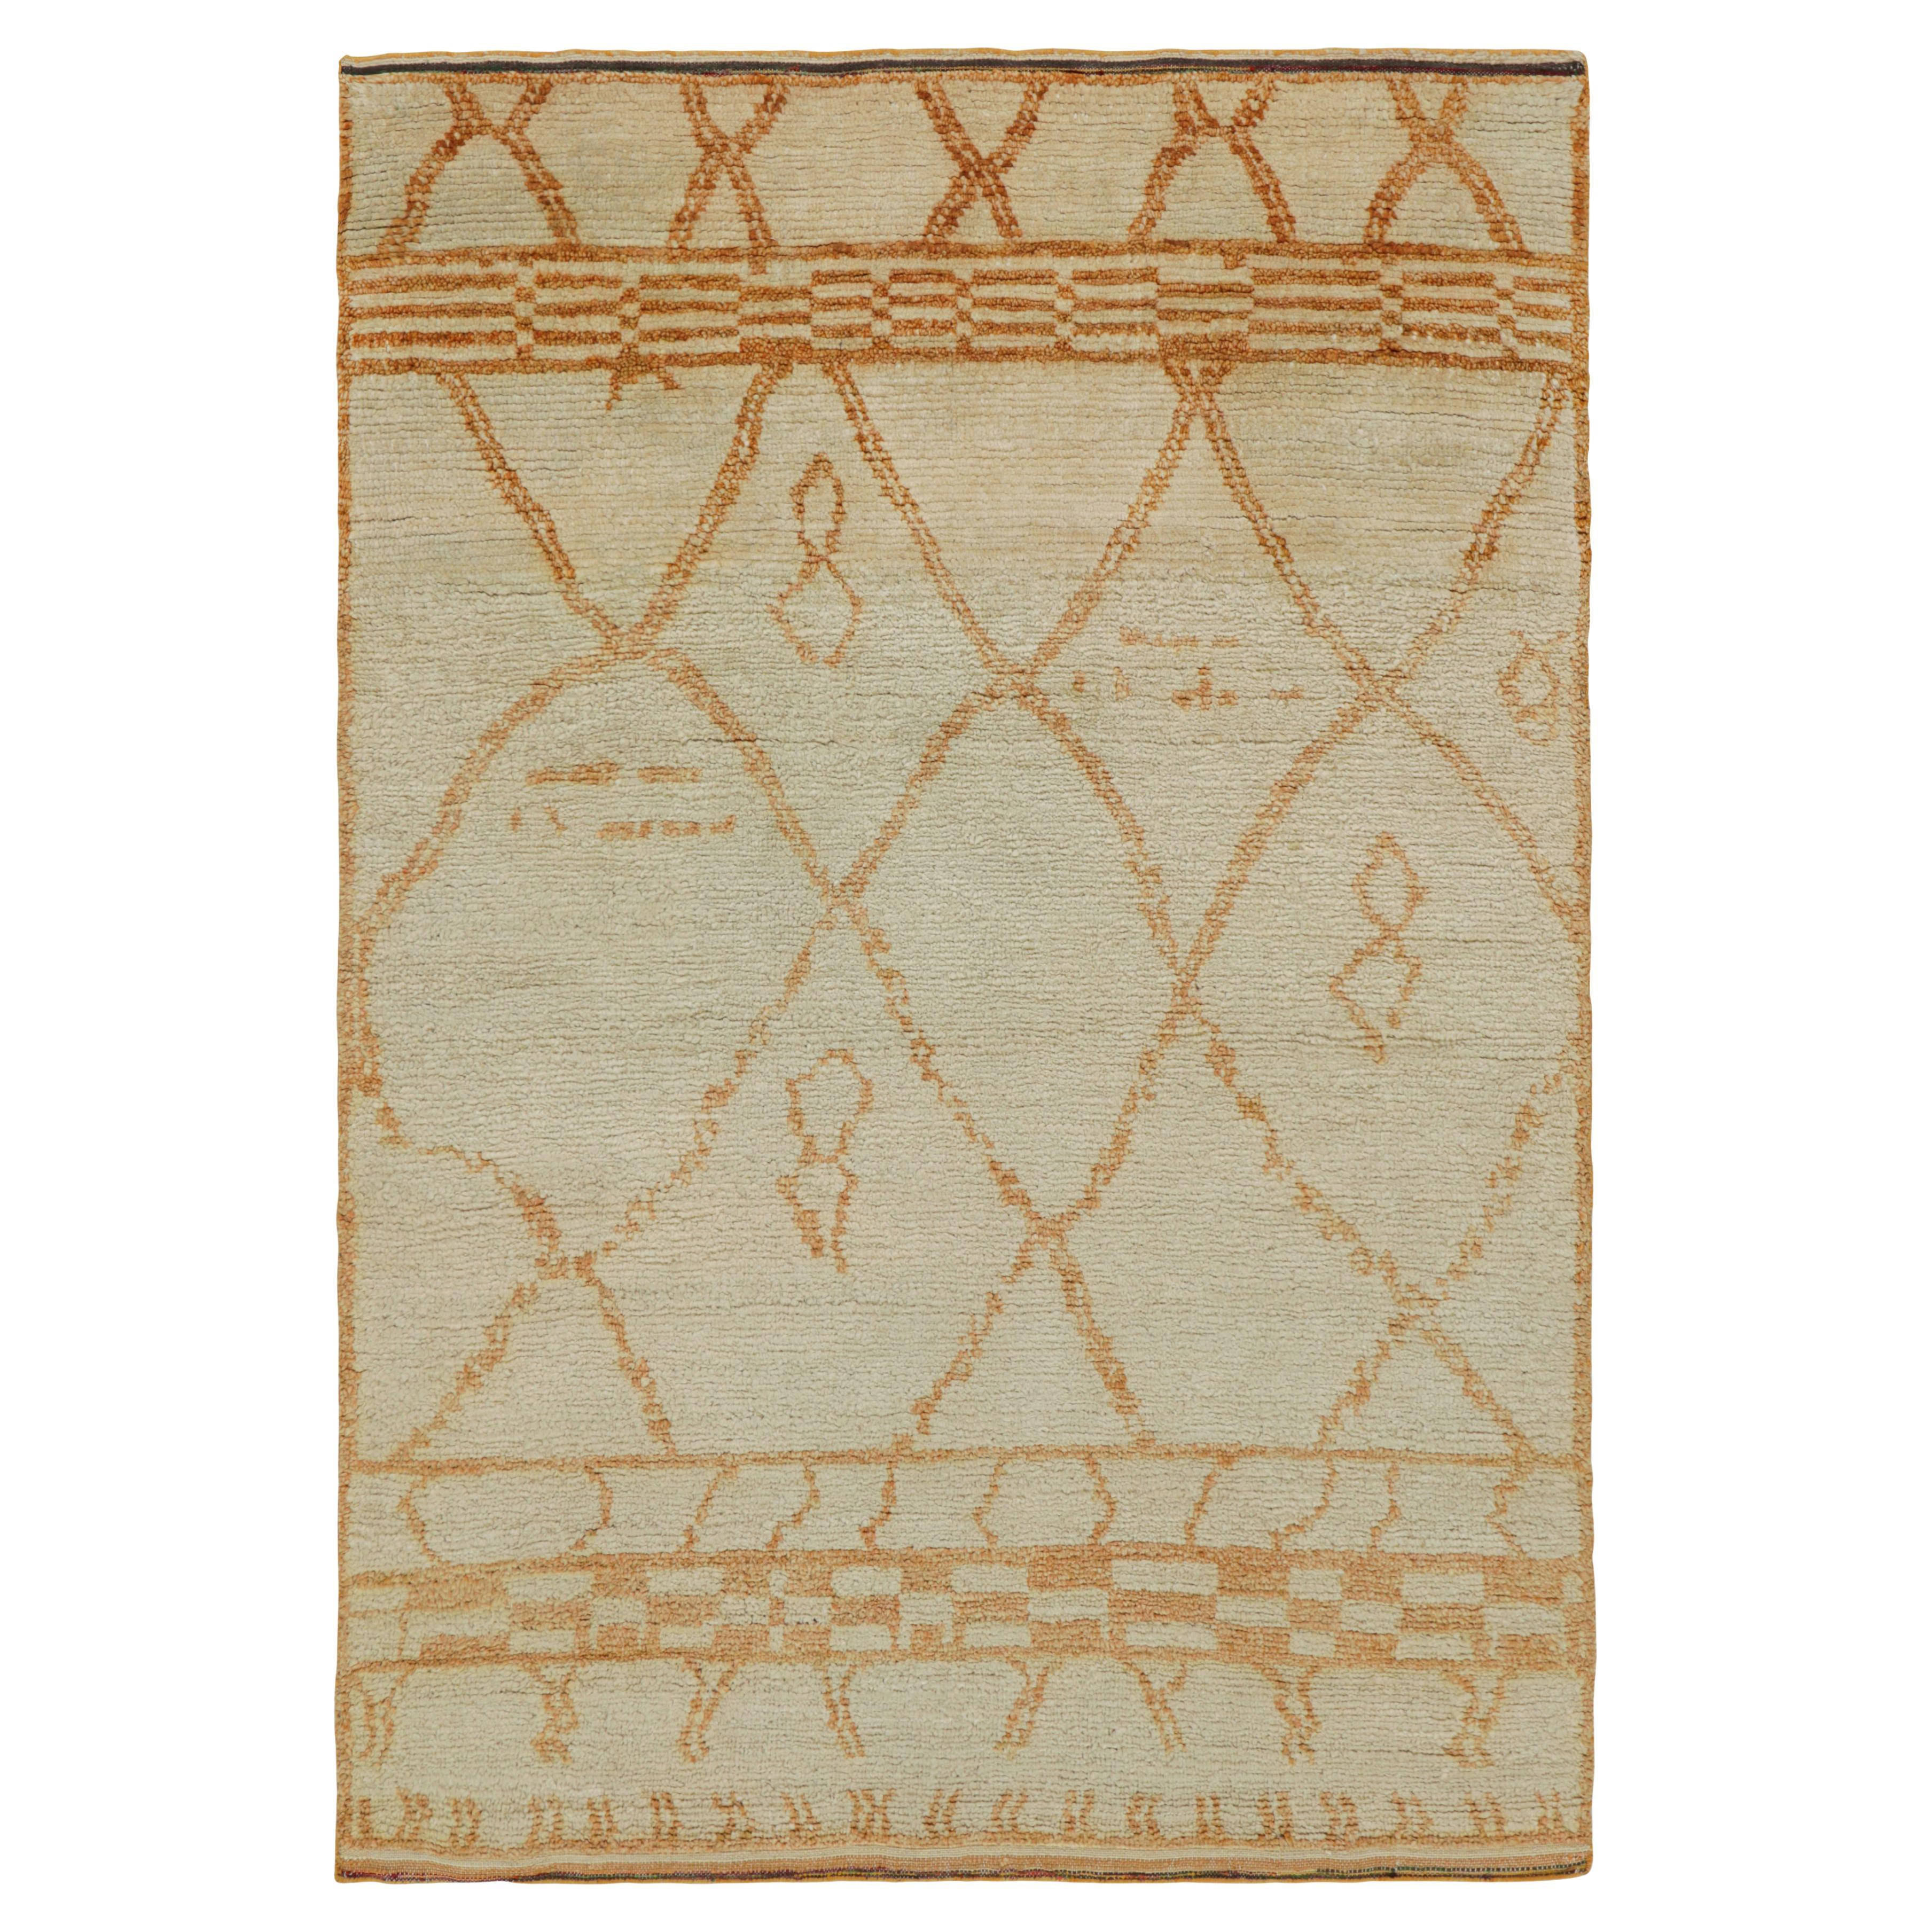 Rug & Kilim's Marokkanischer Teppich in Creme mit orangefarbenen geometrischen Mustern